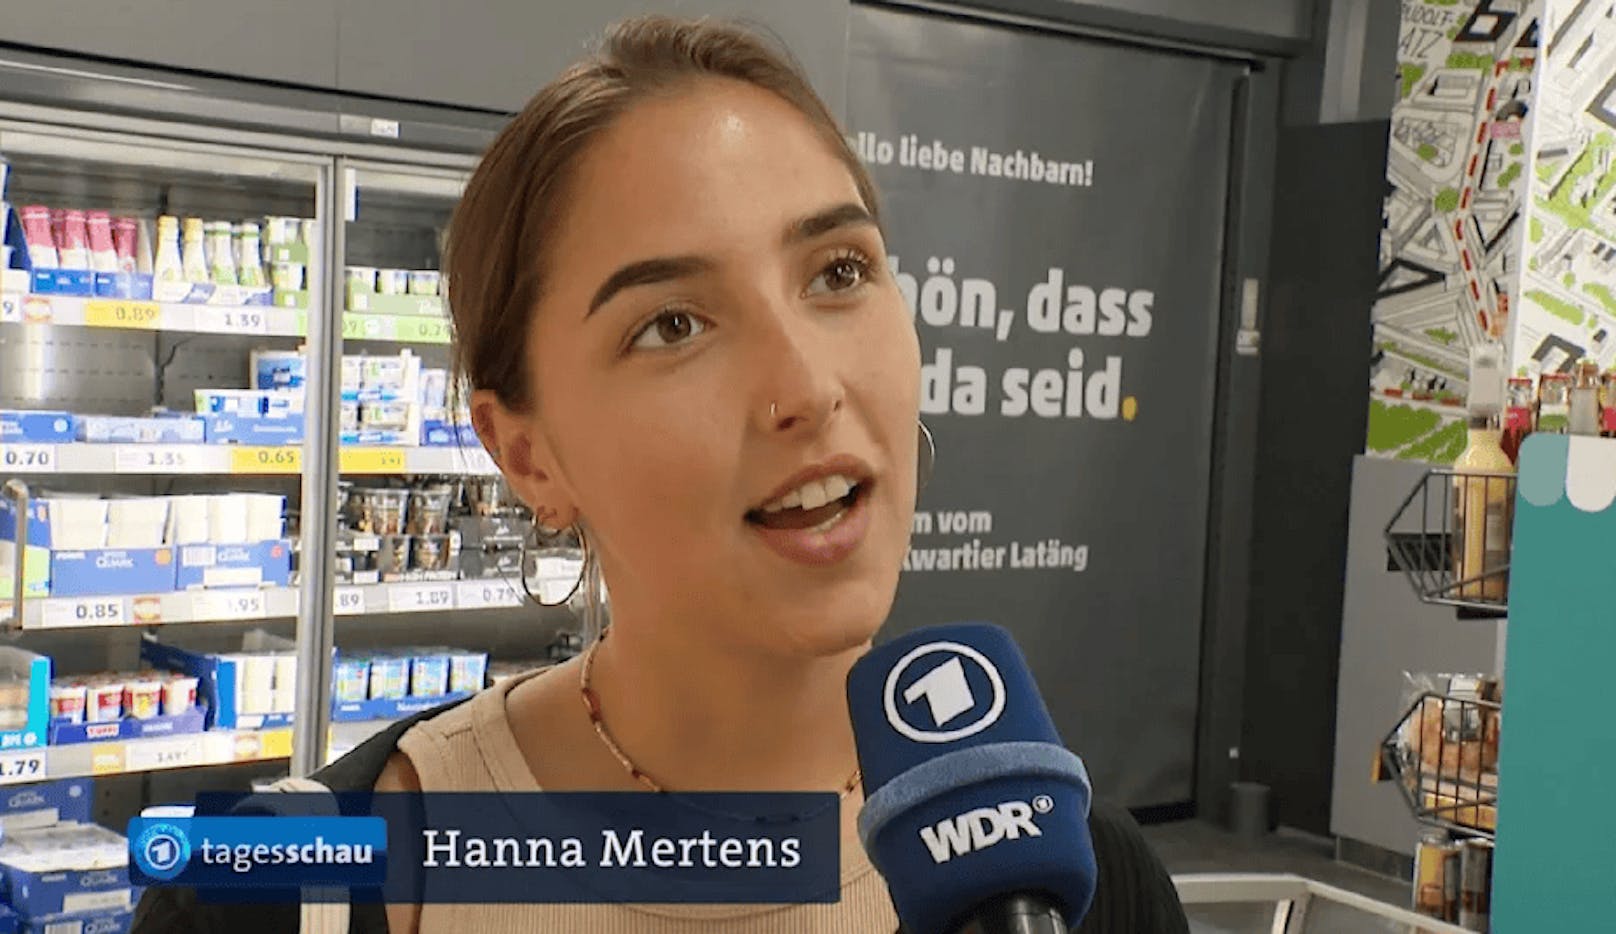 Hannah Mertens, hier mit Hanna Mertens angeschrieben, wurde vom WDR zu ihrer Meinung über das neue Preis-Experiment der Discounter-Kette Penny befragt. 